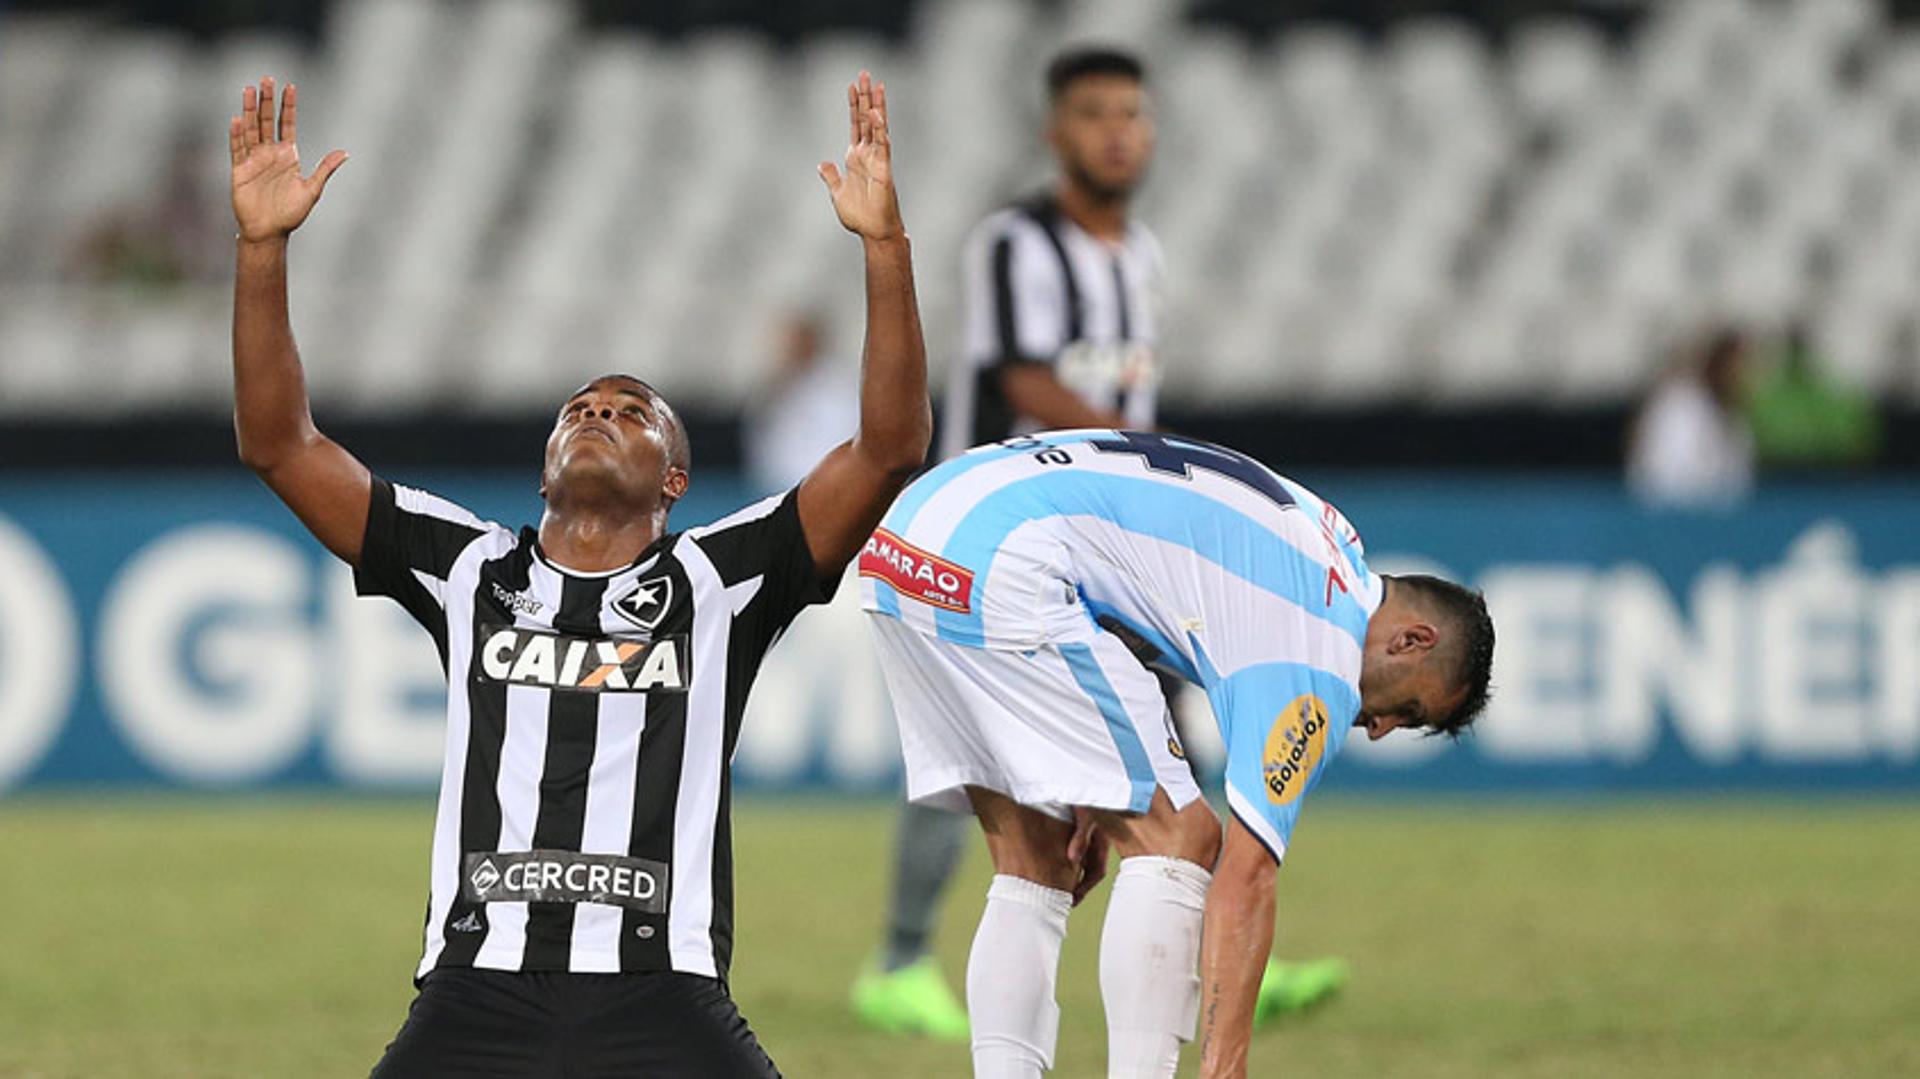 Confira as imagens da vitória do Botafogo sobre o Macaé